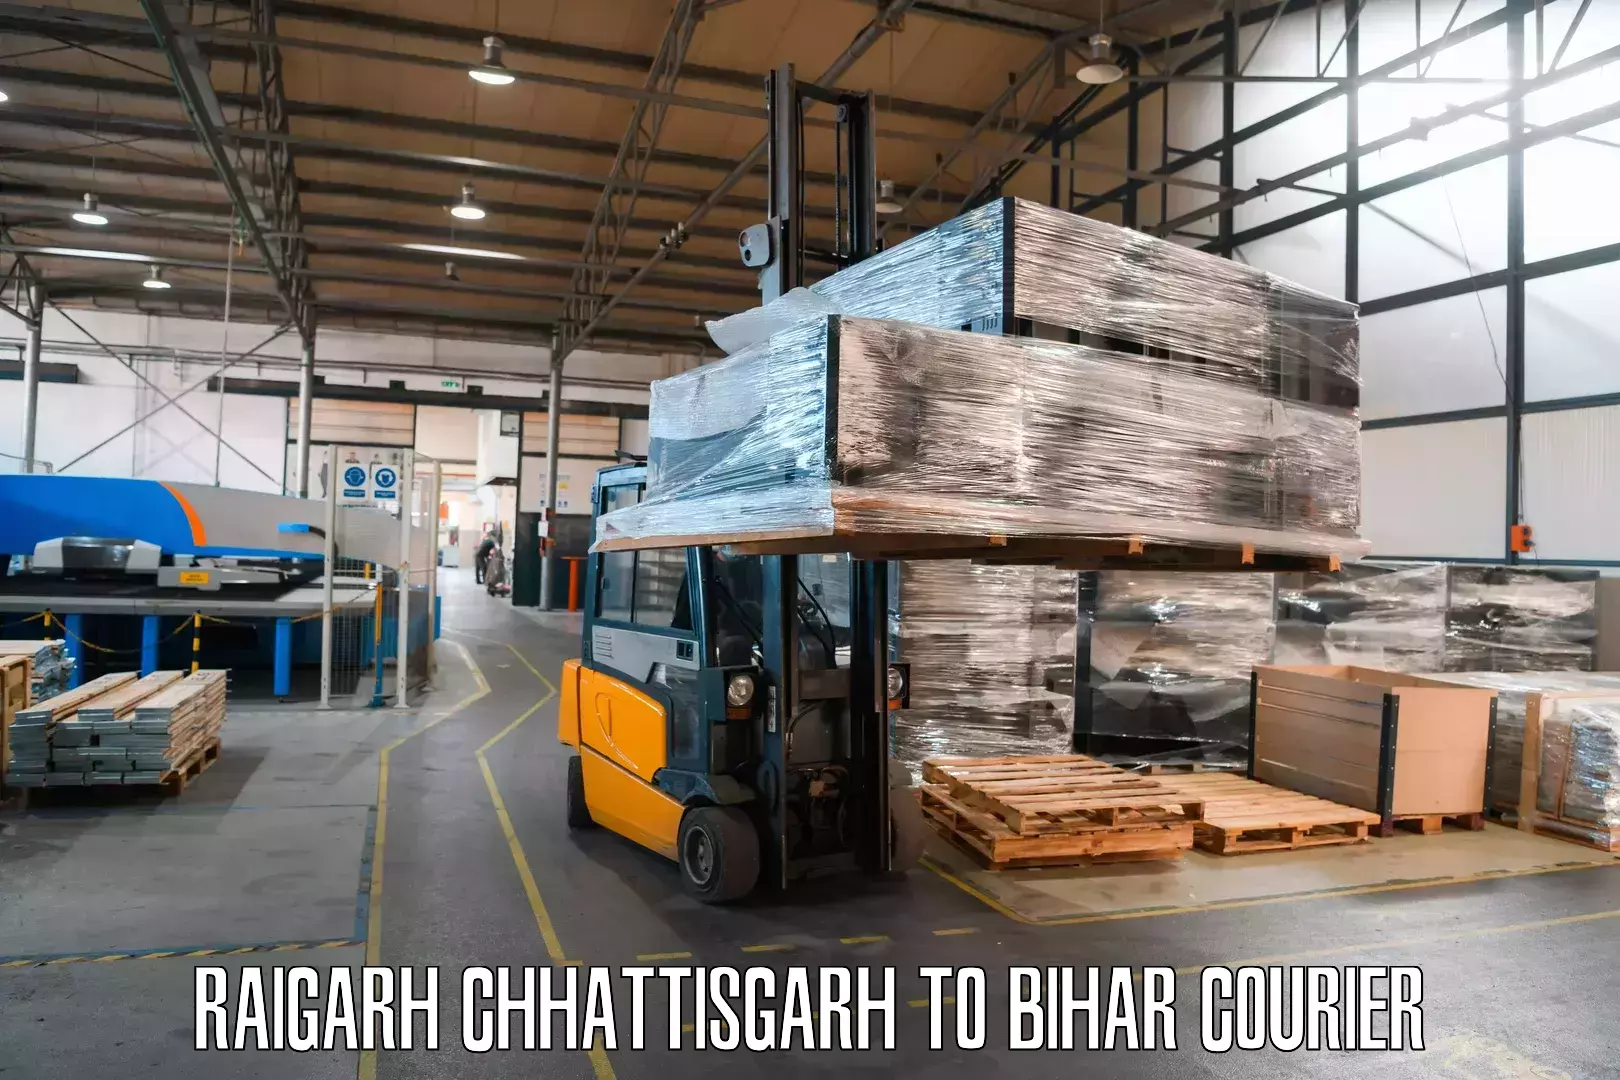 Cash on delivery service Raigarh Chhattisgarh to Tekari